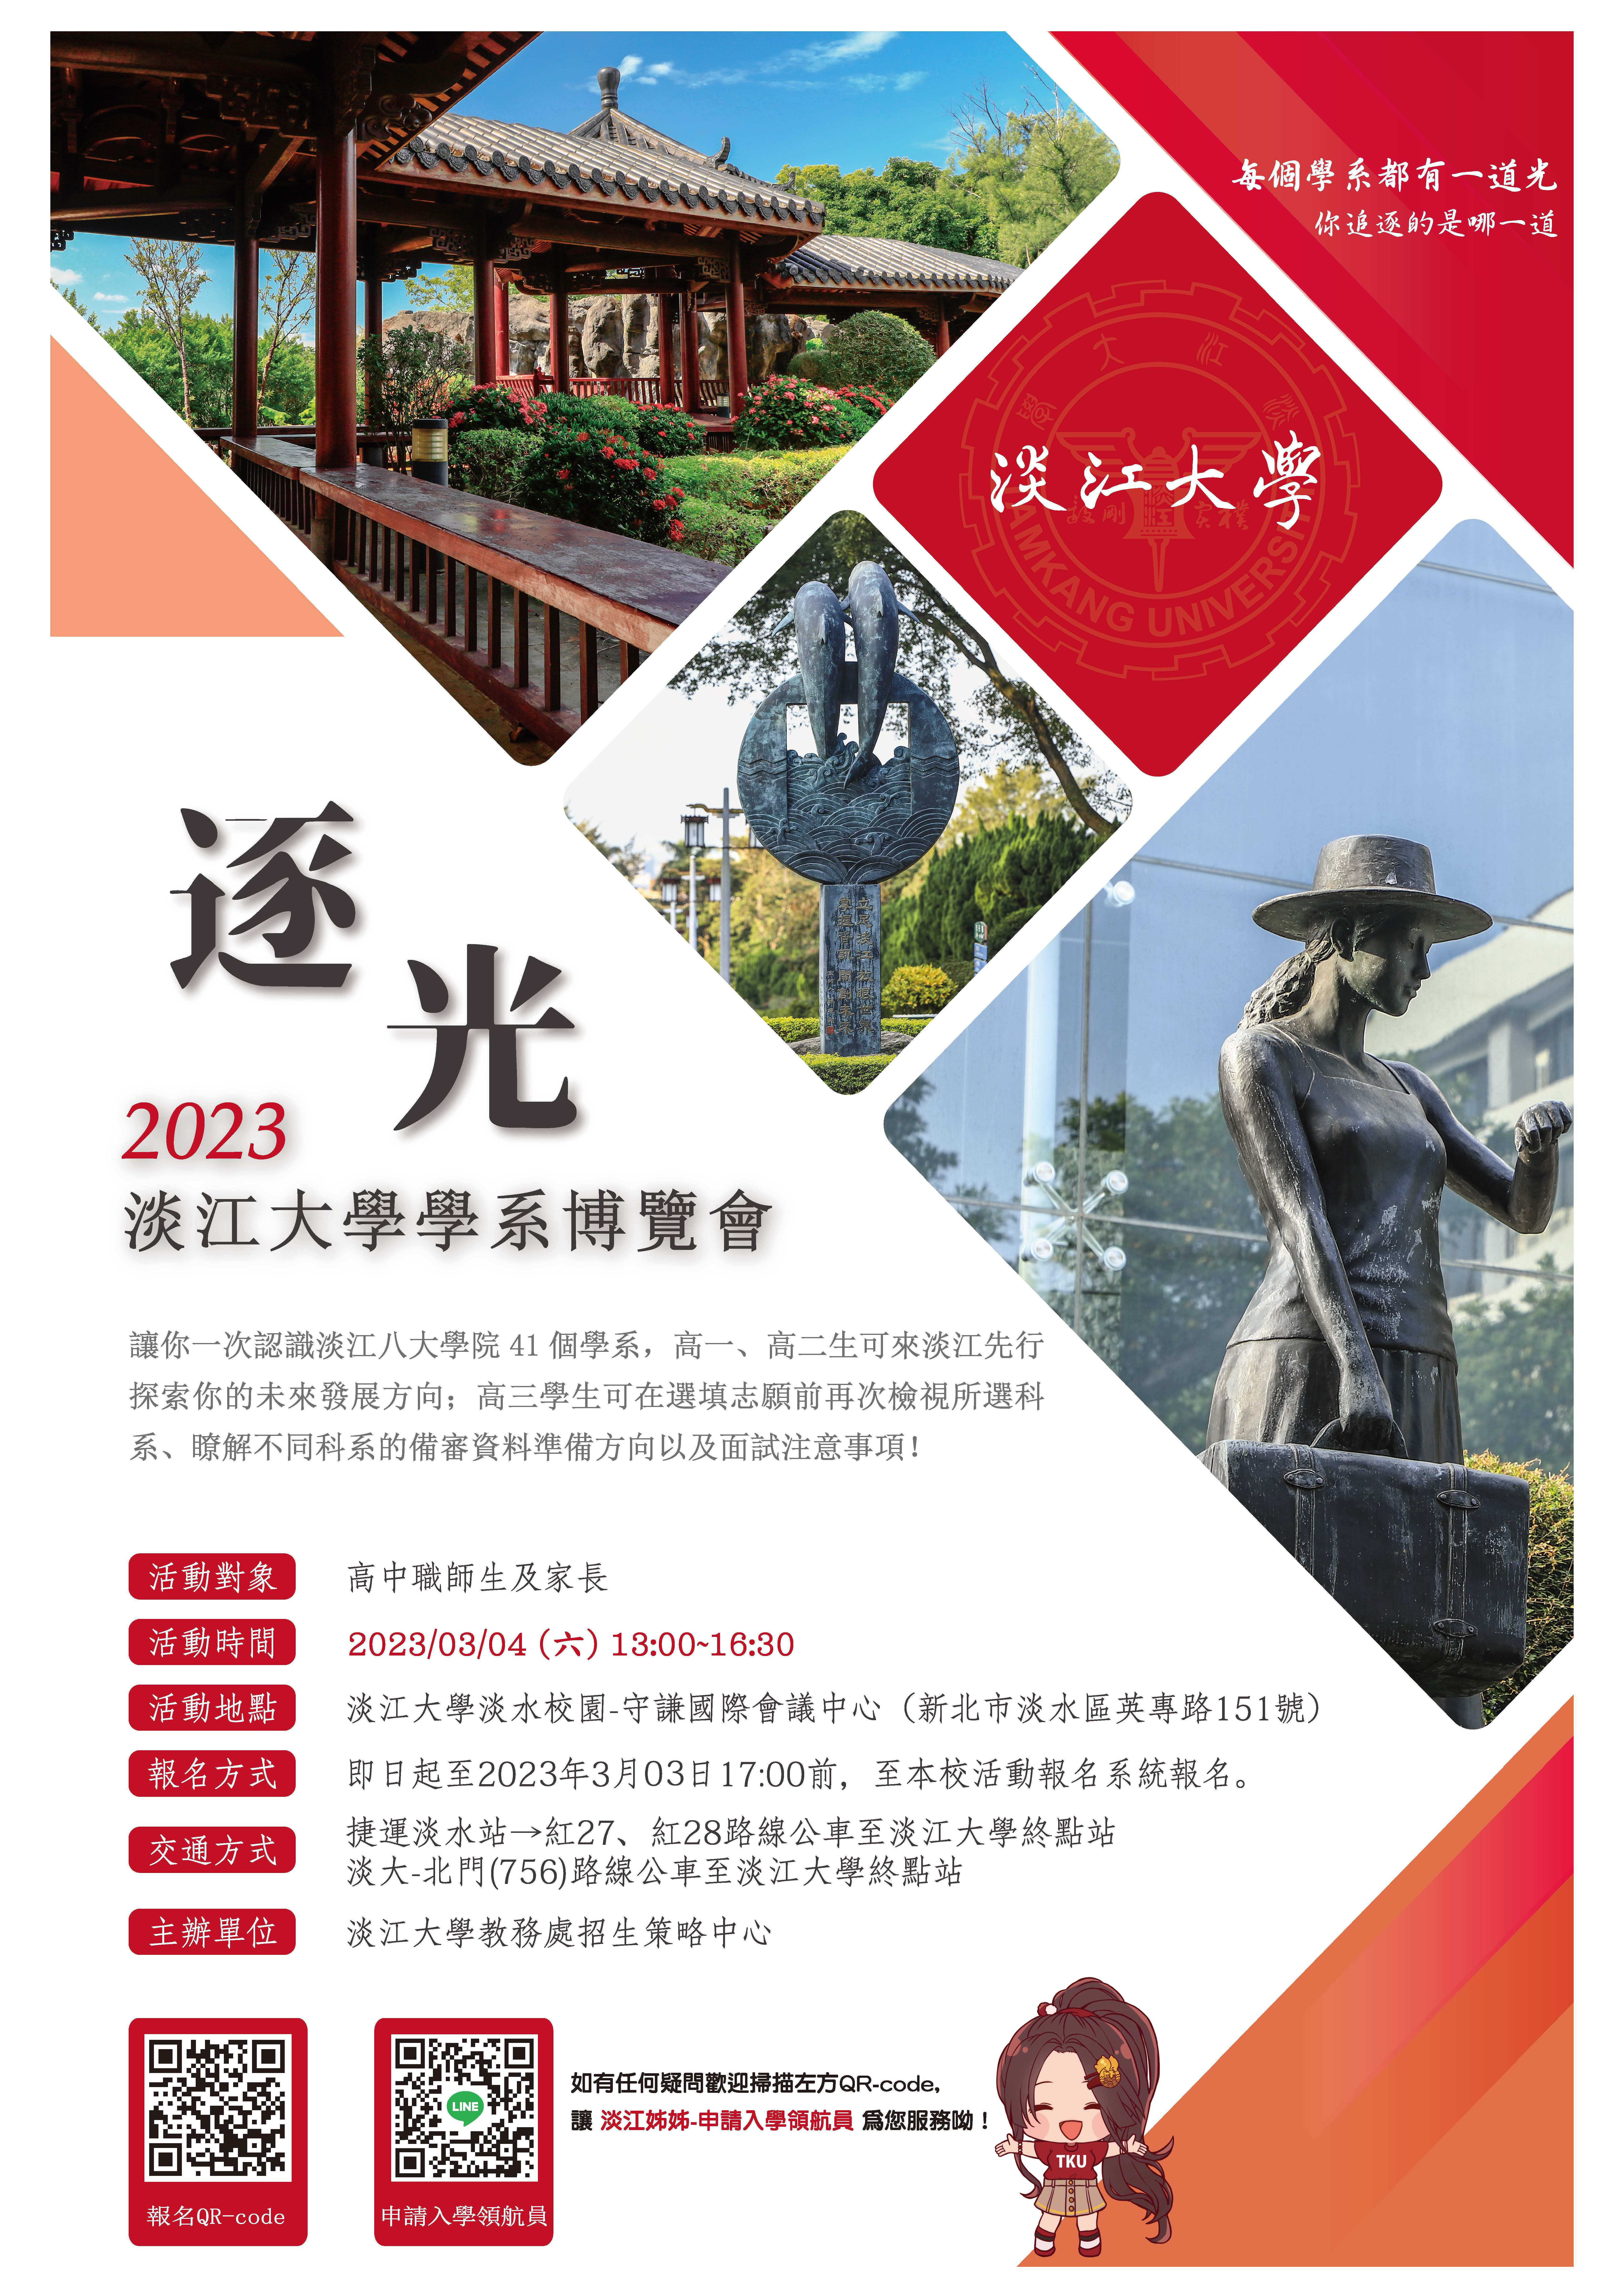 逐光-2023年淡江大學學系博覽會